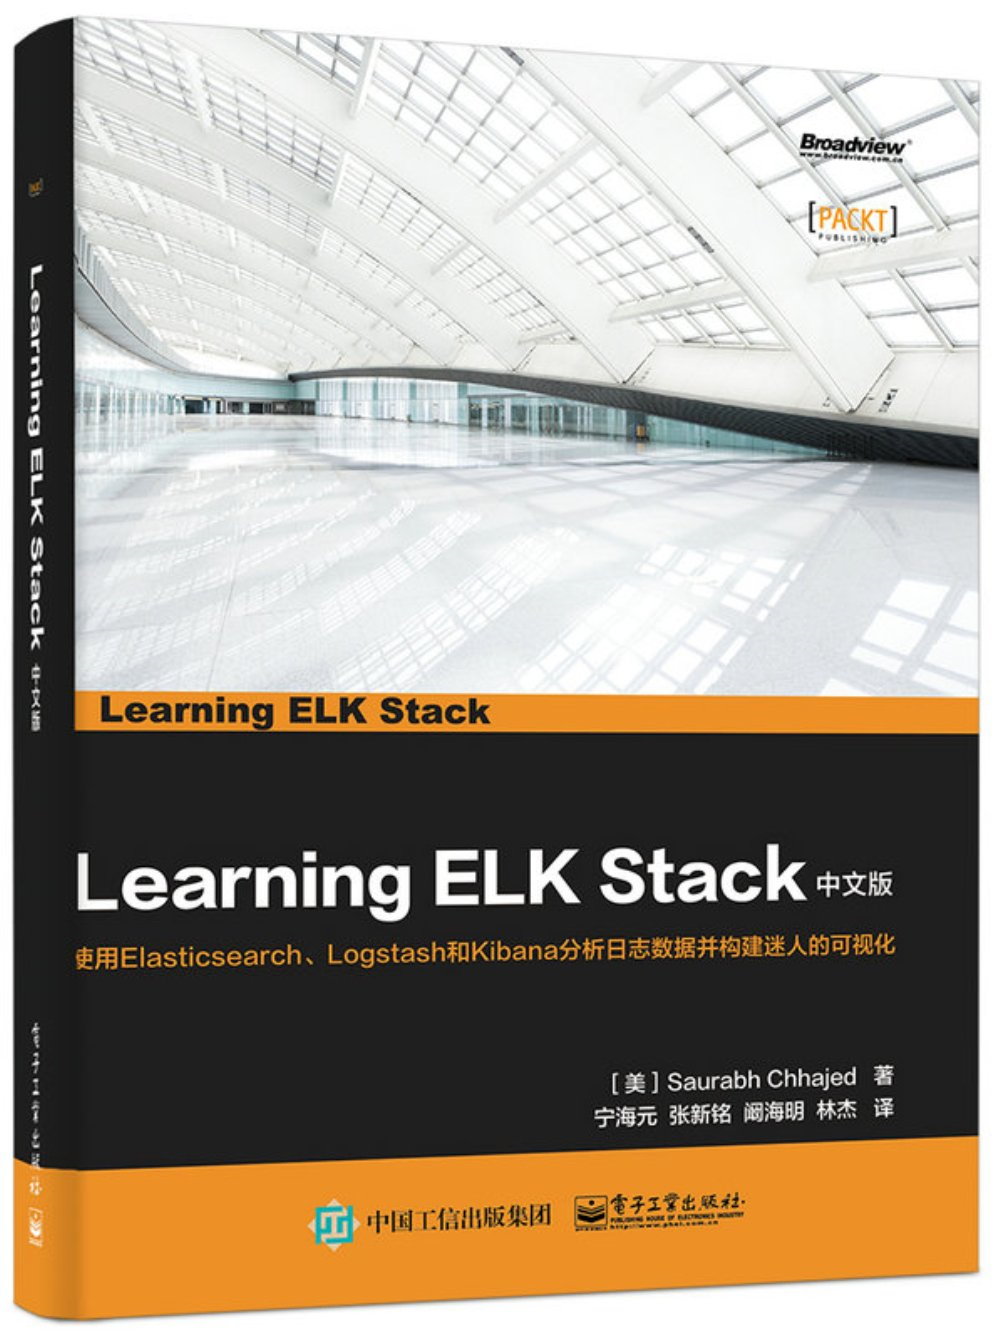 Learning ELK Stack(中文版)